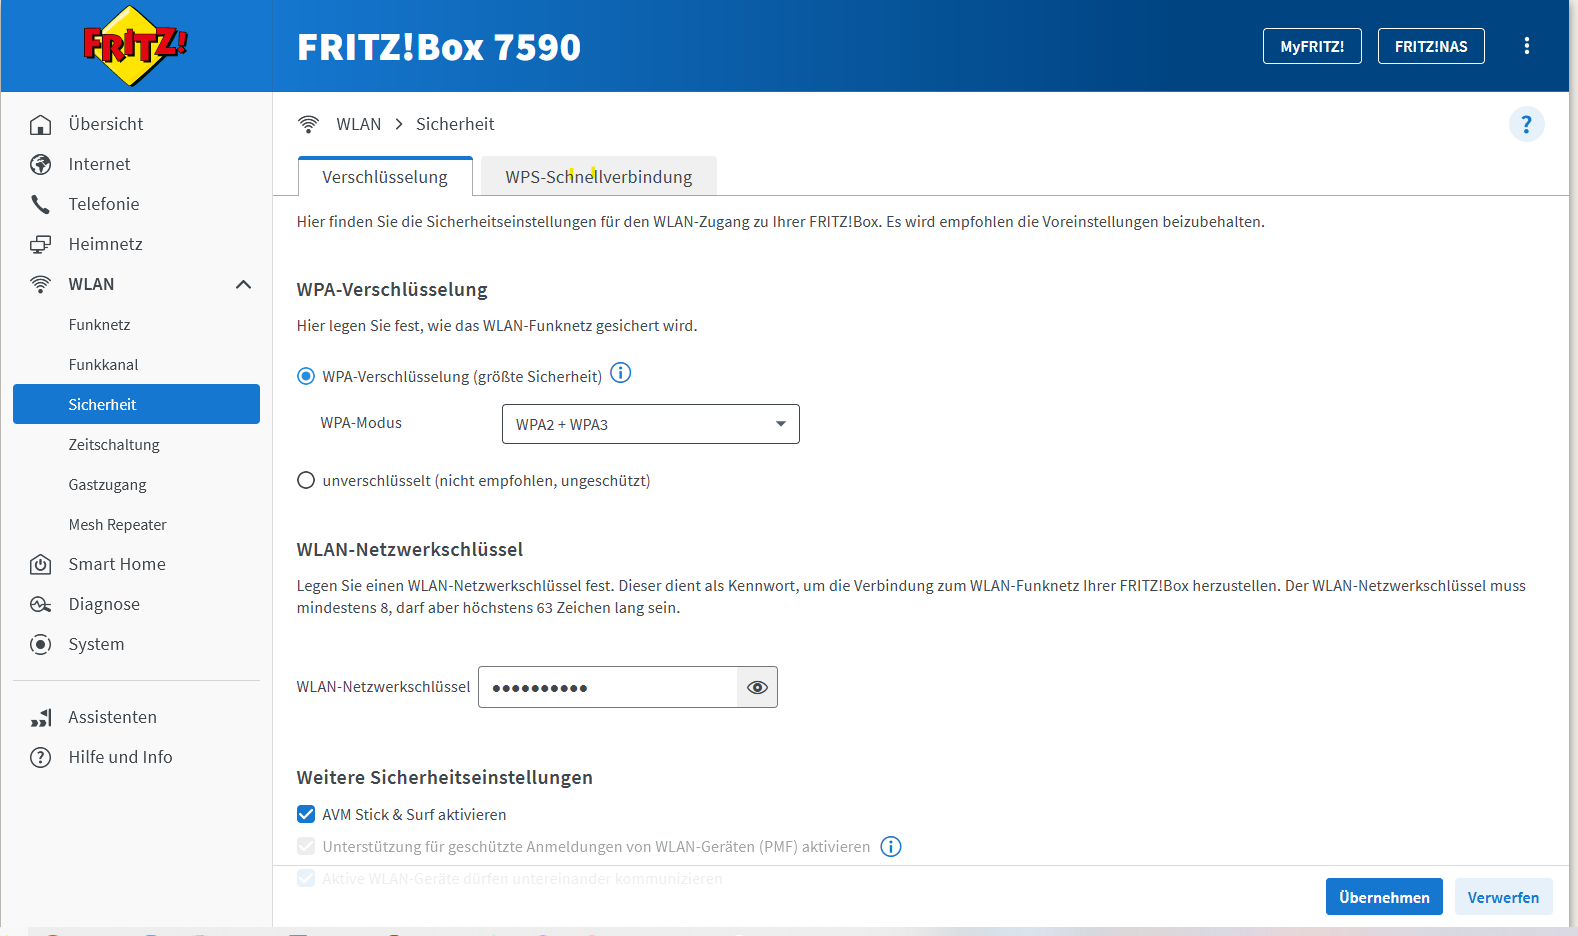 Die Fritz!Box kann mit WPA2 und WPA3 gleichzeitig umgehen.